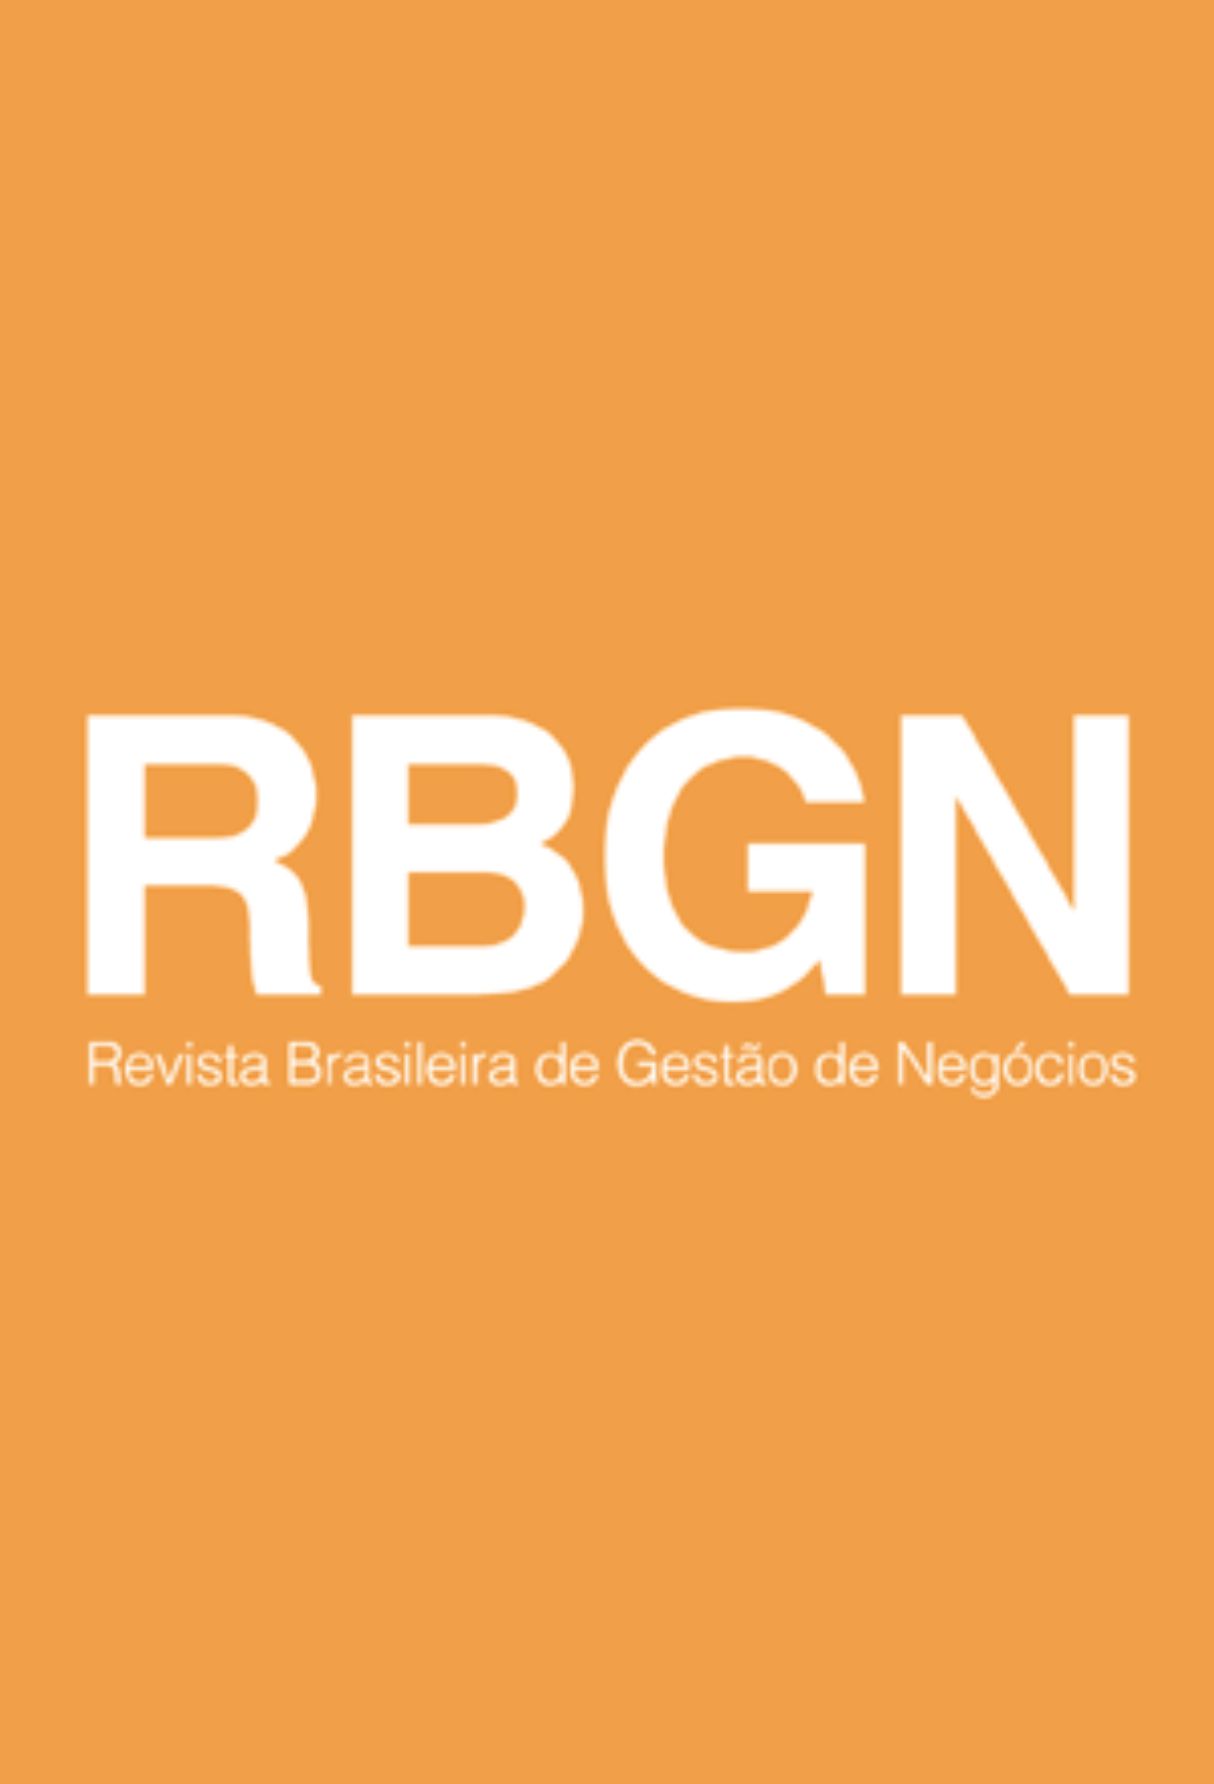 Capa: Revista Brasileira de Gestão de Negócios